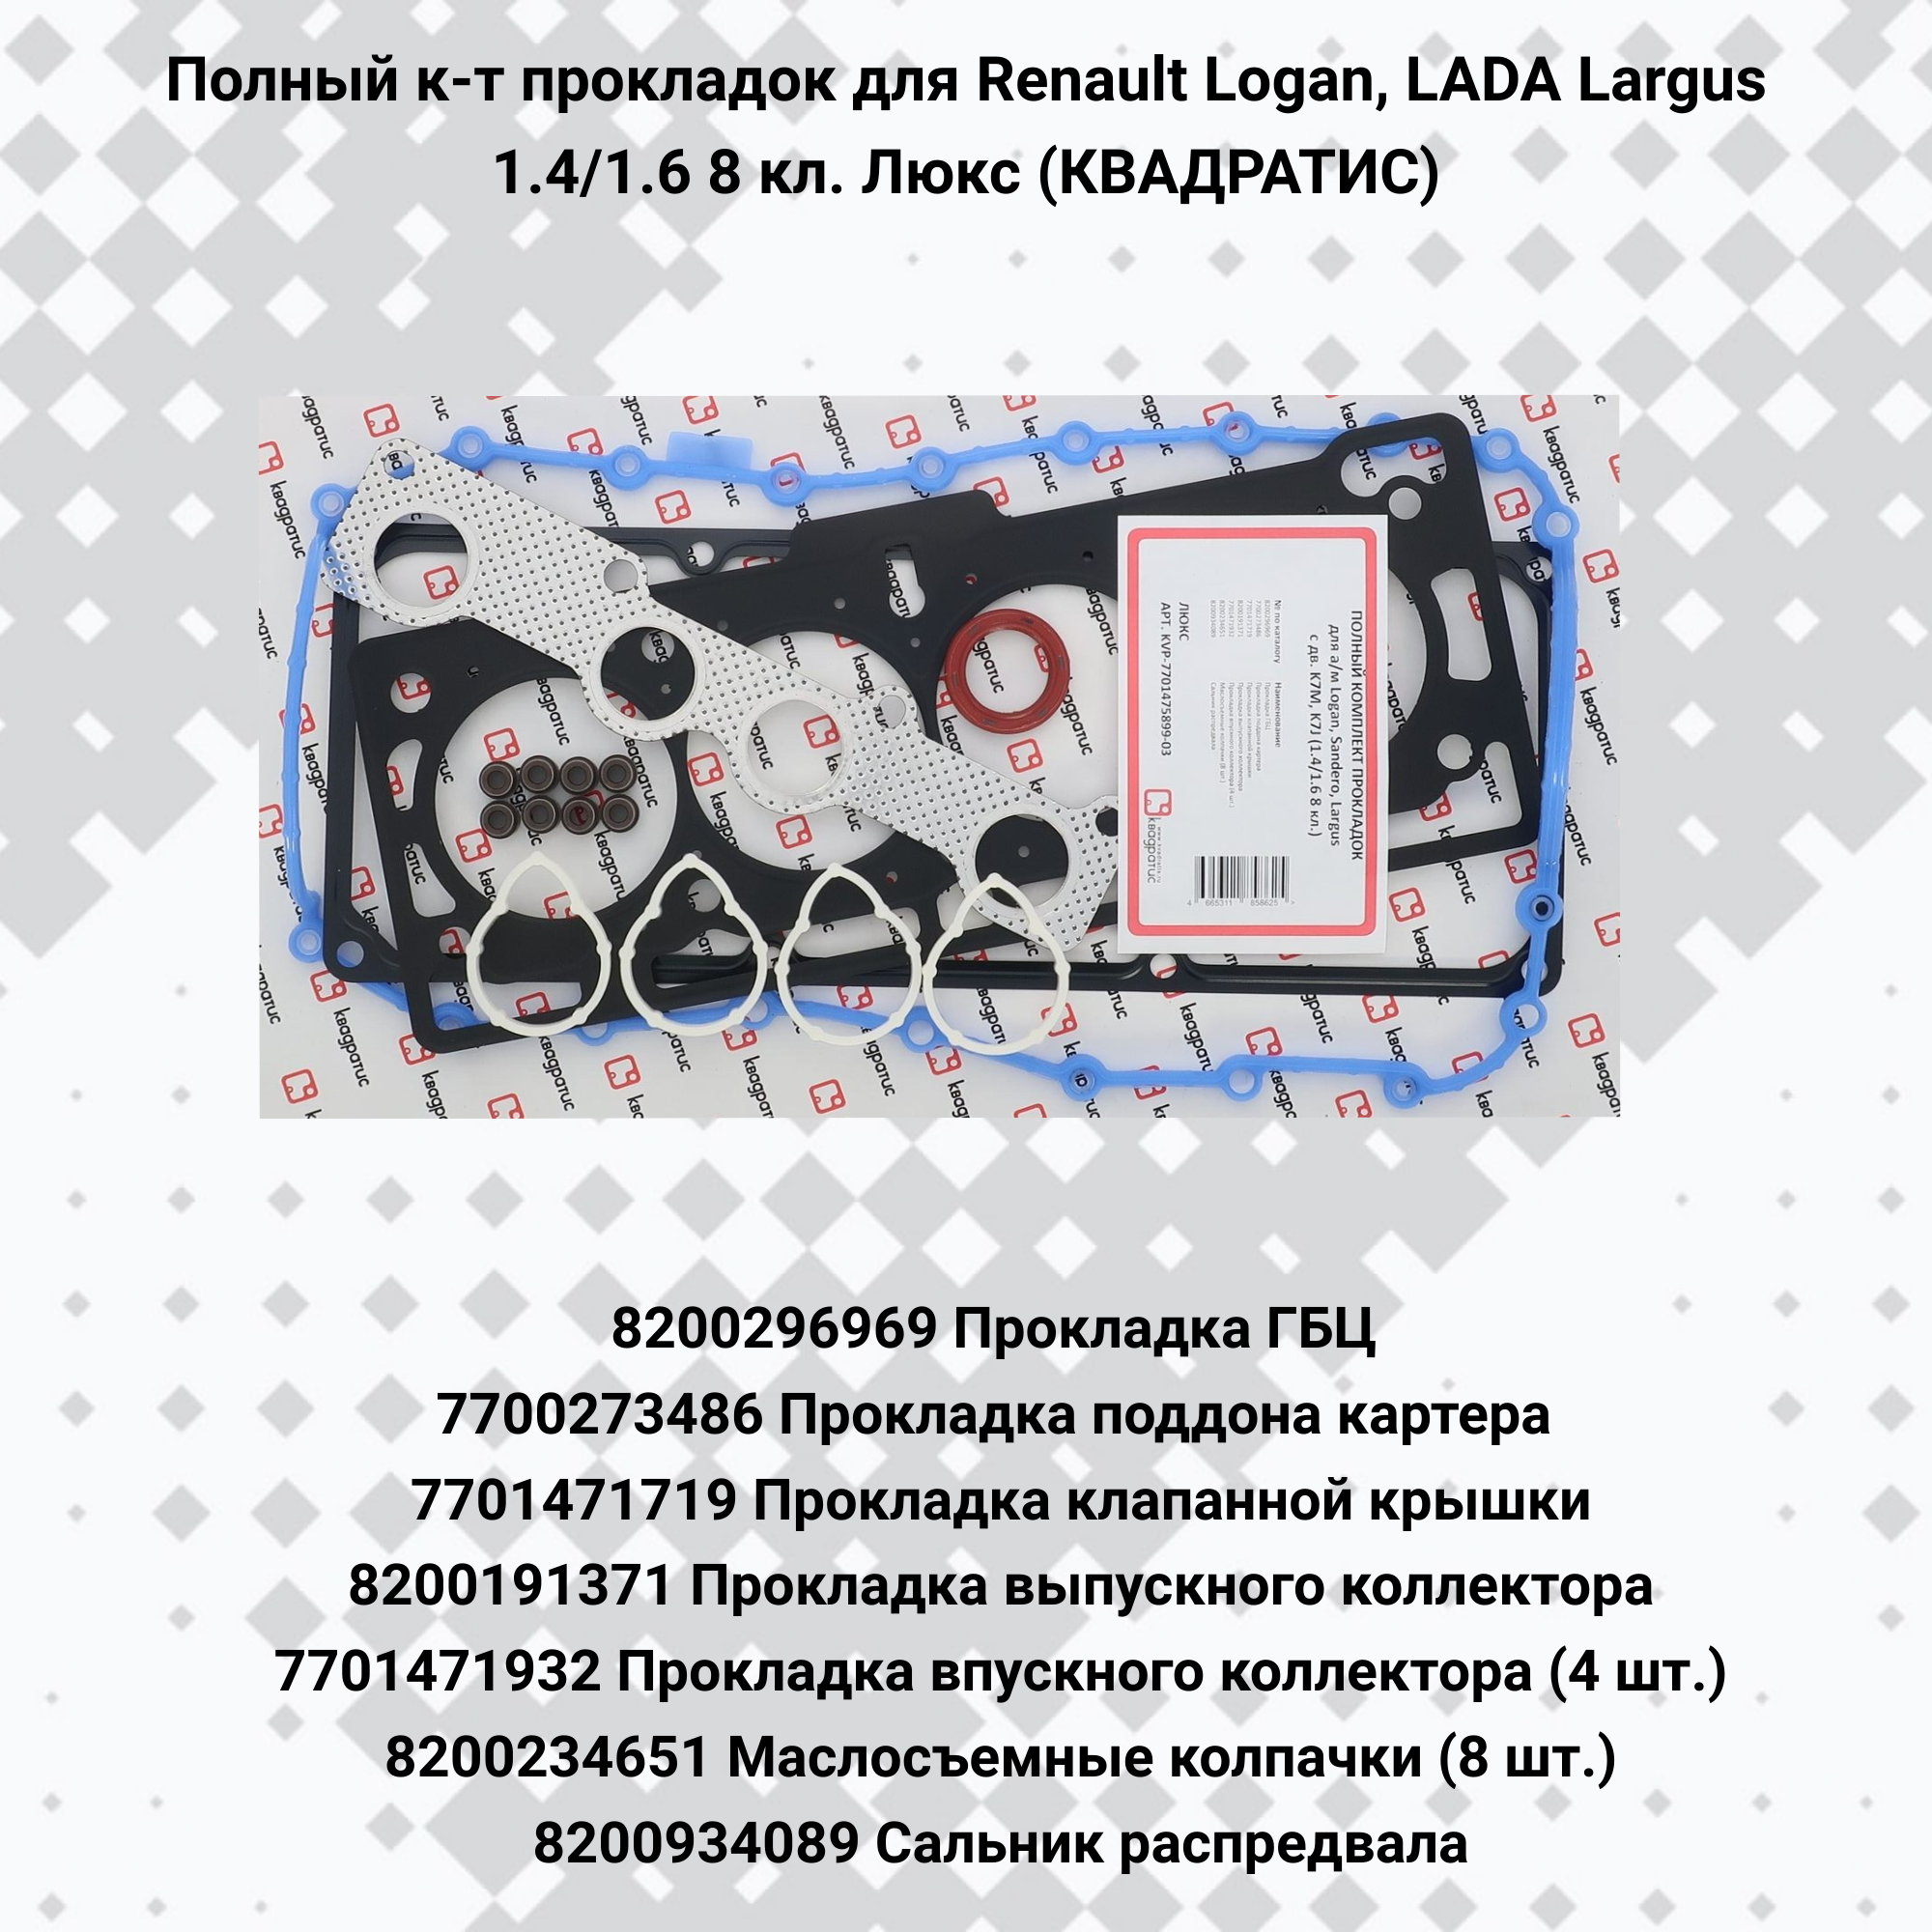 Полный к-т прокладок для Renault Logan, LADA Largus 1.4/1.6 8 кл. Люкс (квадратис)